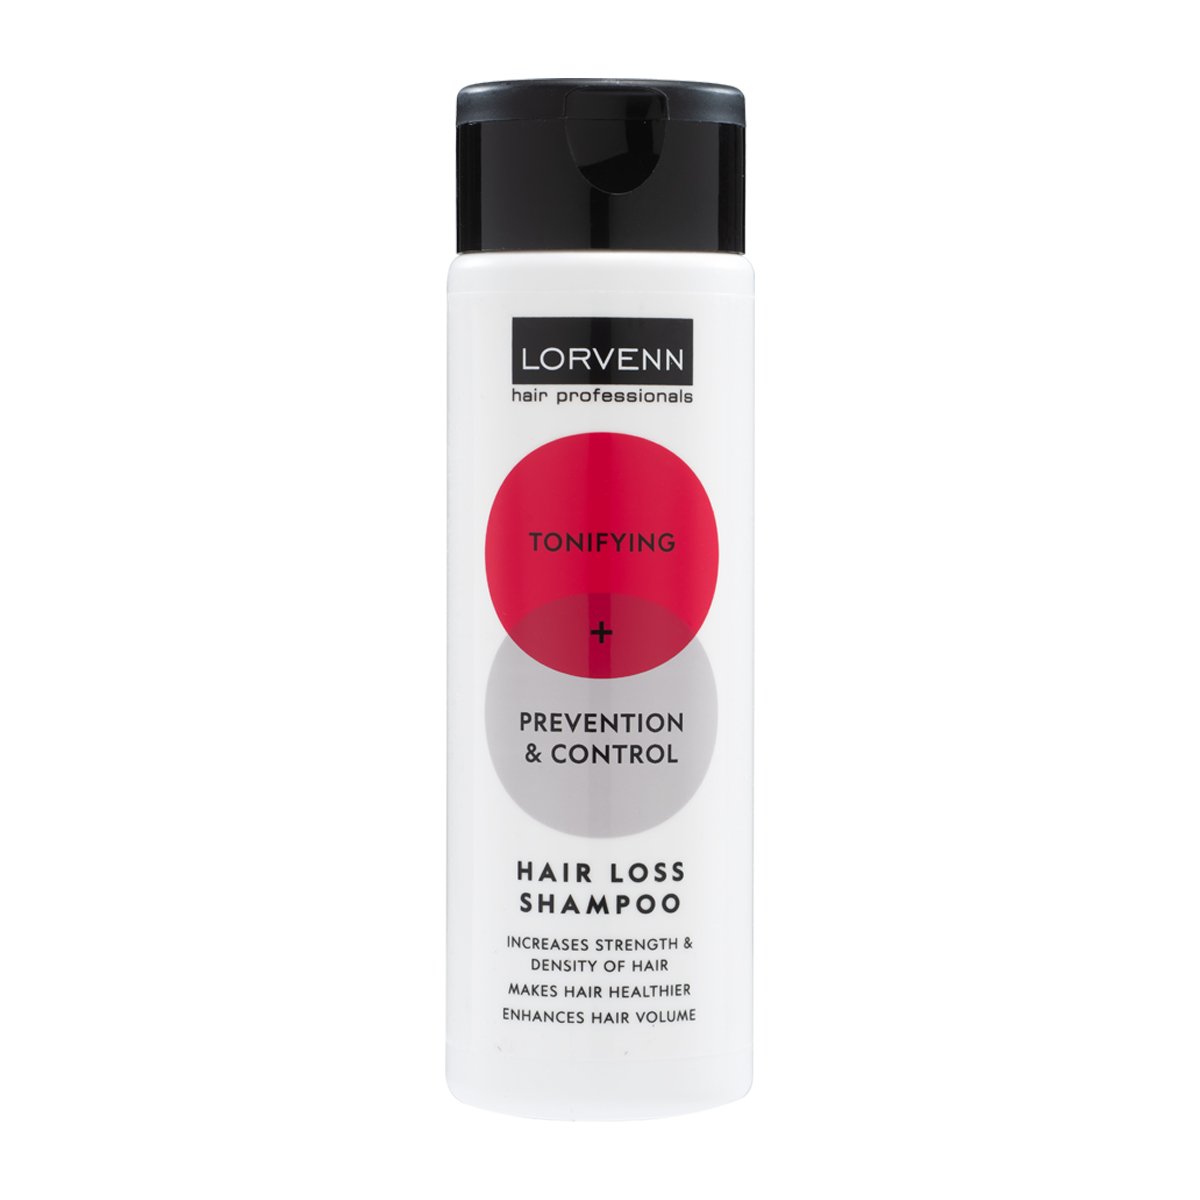 Hair loss shampoo - Parfumeriet Hørsholm